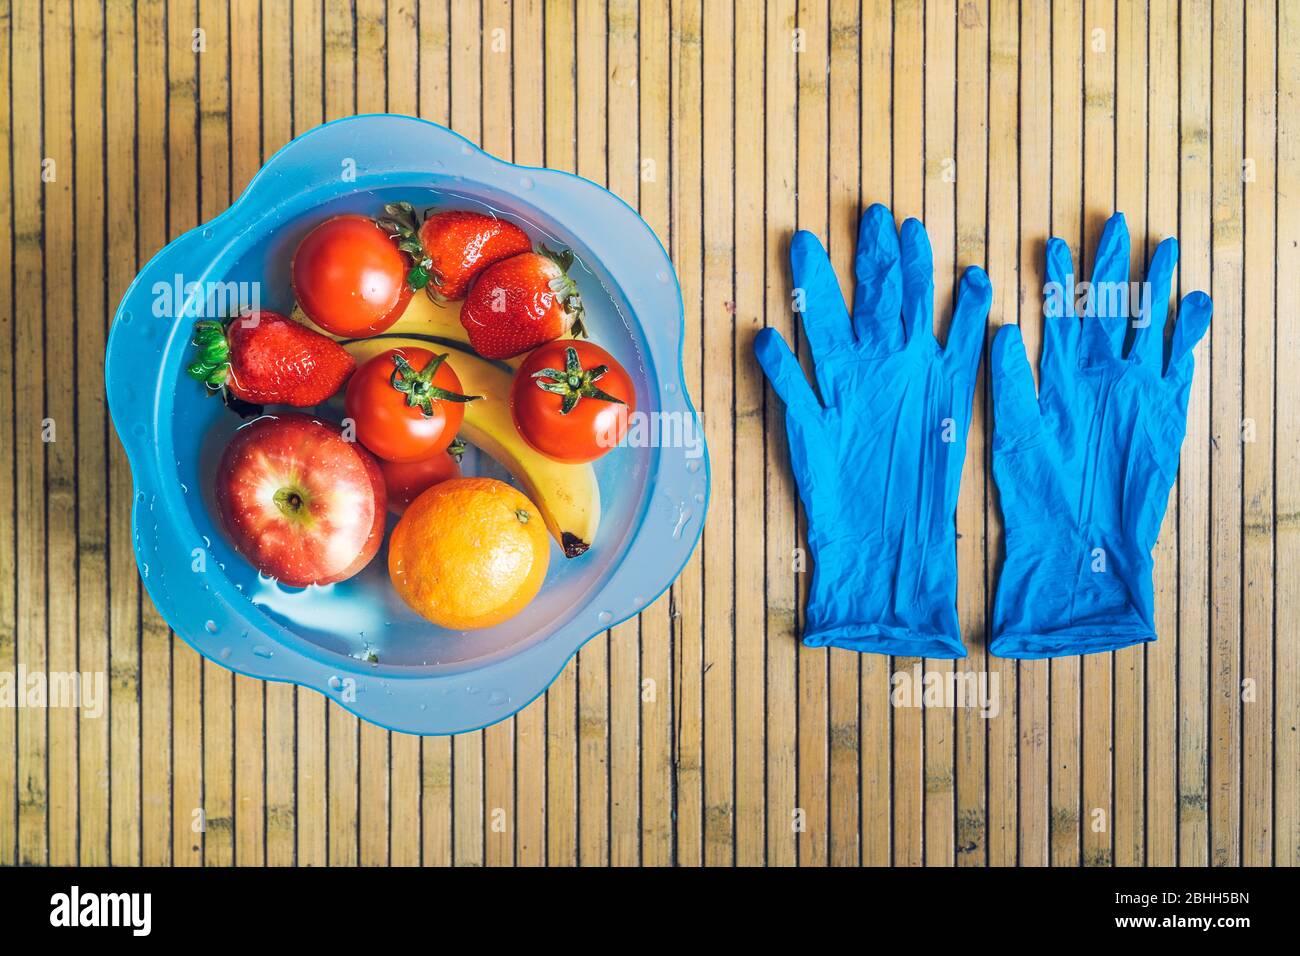 Bol bleu avec différents fruits frais et propres sur une base en bois avec des gants en latex bleu. Bananes, tomates, pommes, fraises et oranges immergées Banque D'Images